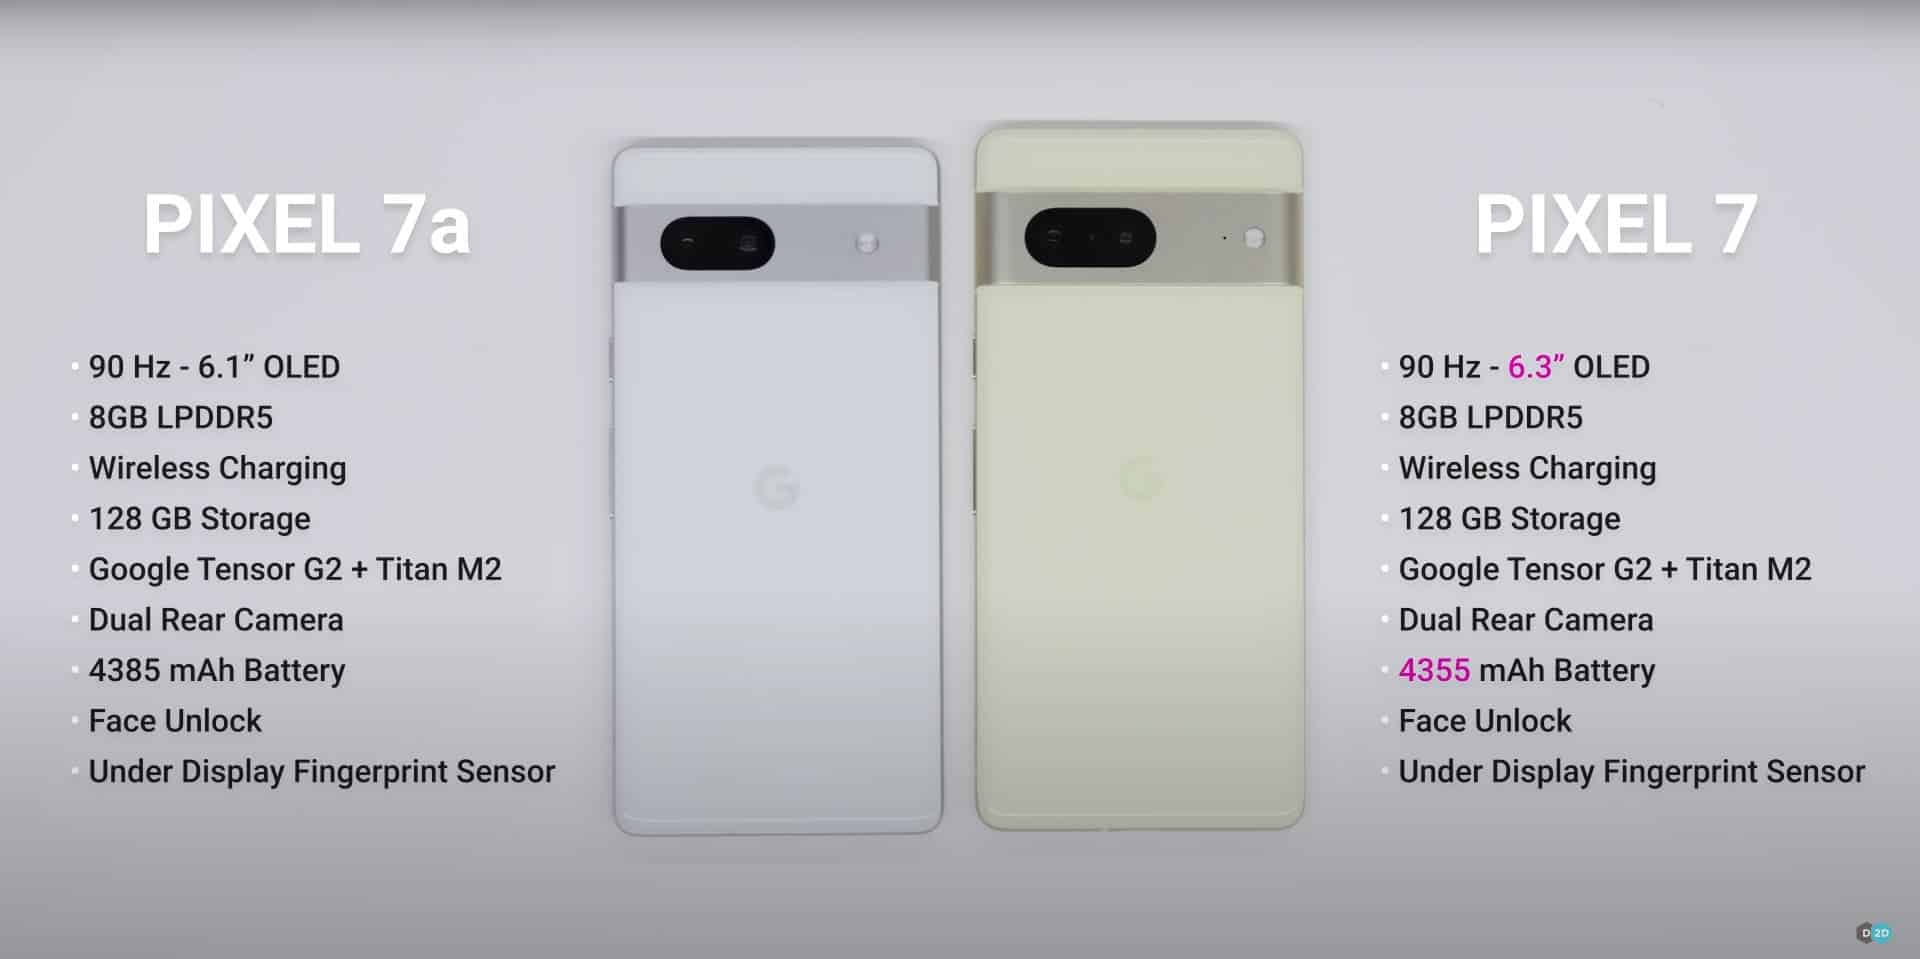 Google Pixel 7a vs Pixel 7